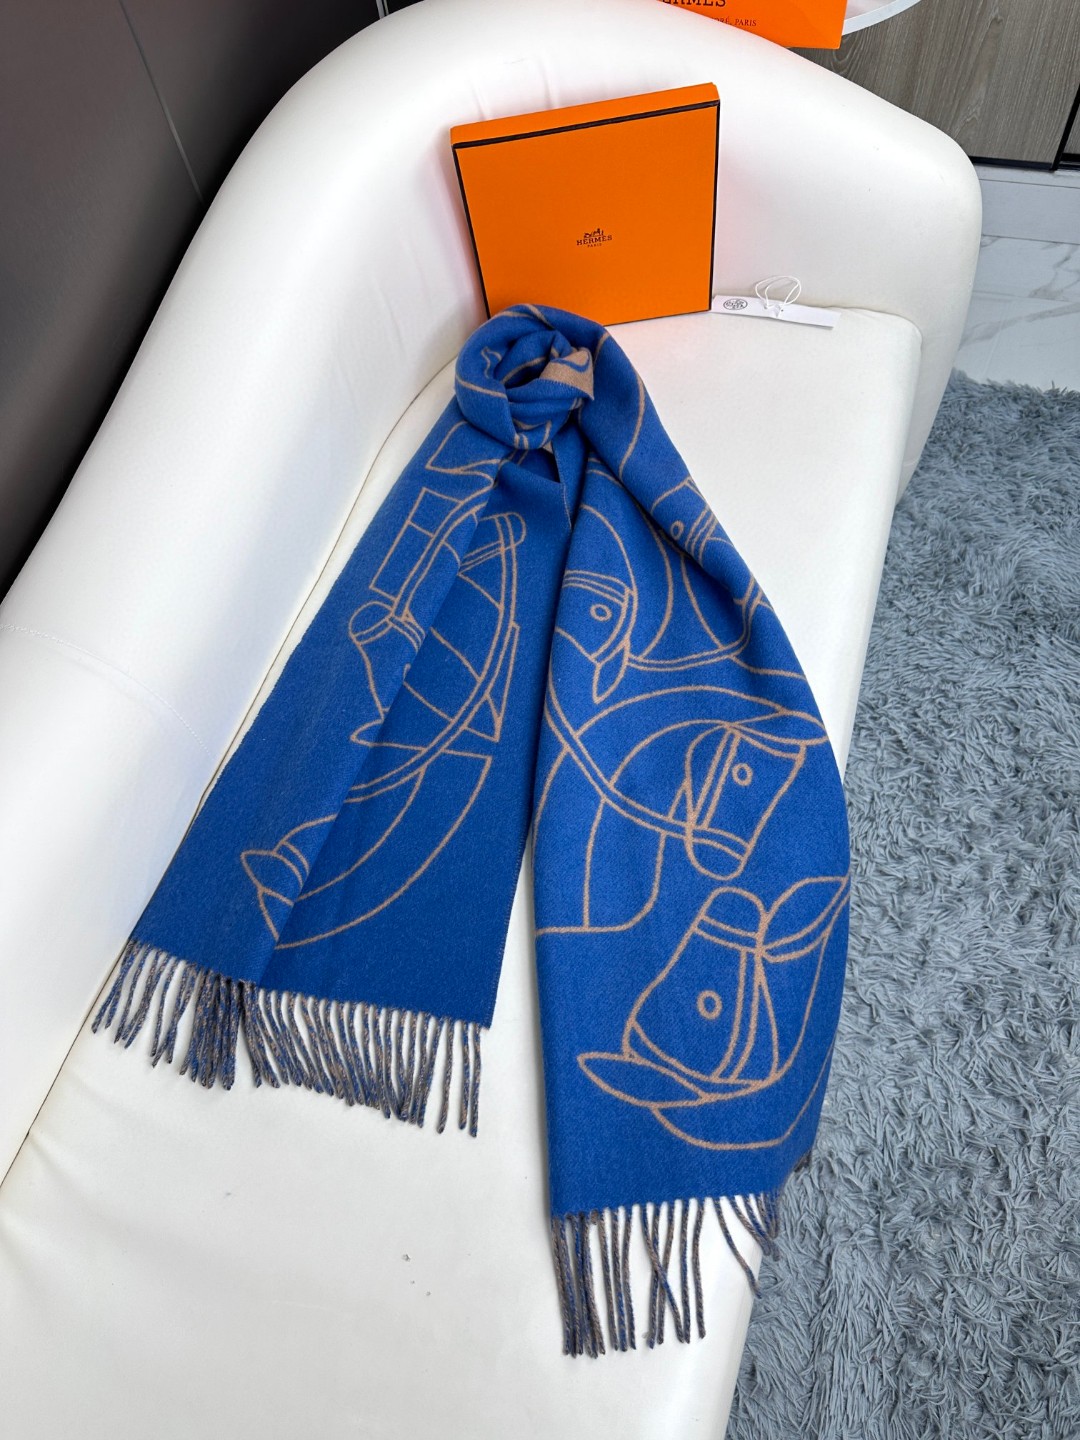 爱马仕新款这款围巾采用细腻的撞色提花编织呈现杰夫麦克菲里奇GeoffMcFetridge设计的Entre